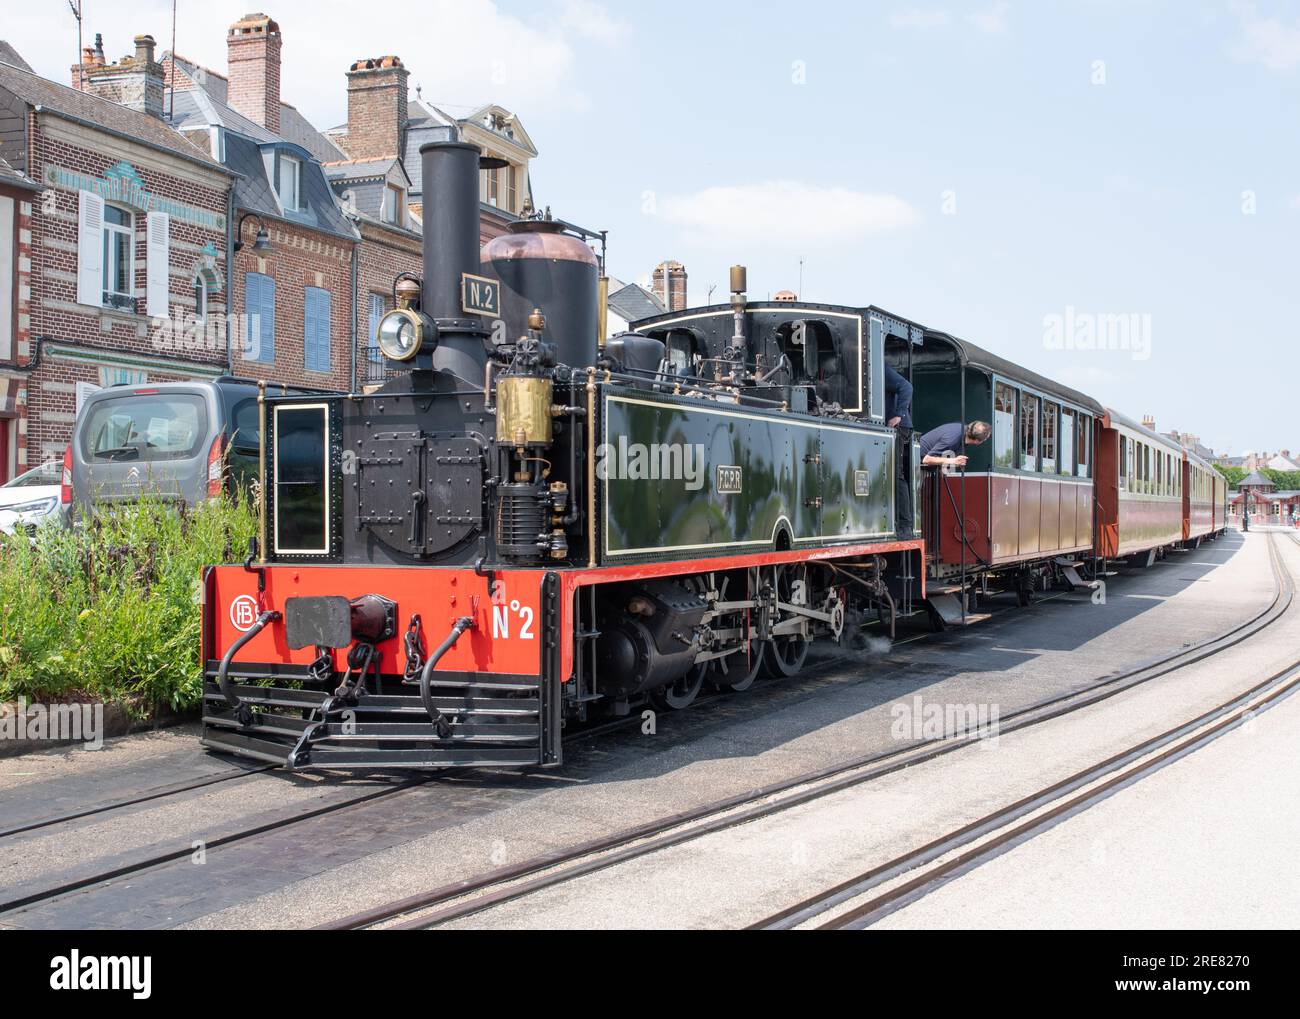 Chemin de fer de la Baie de somme, locomotive numéro 2 partant de St Valery sur somme Banque D'Images